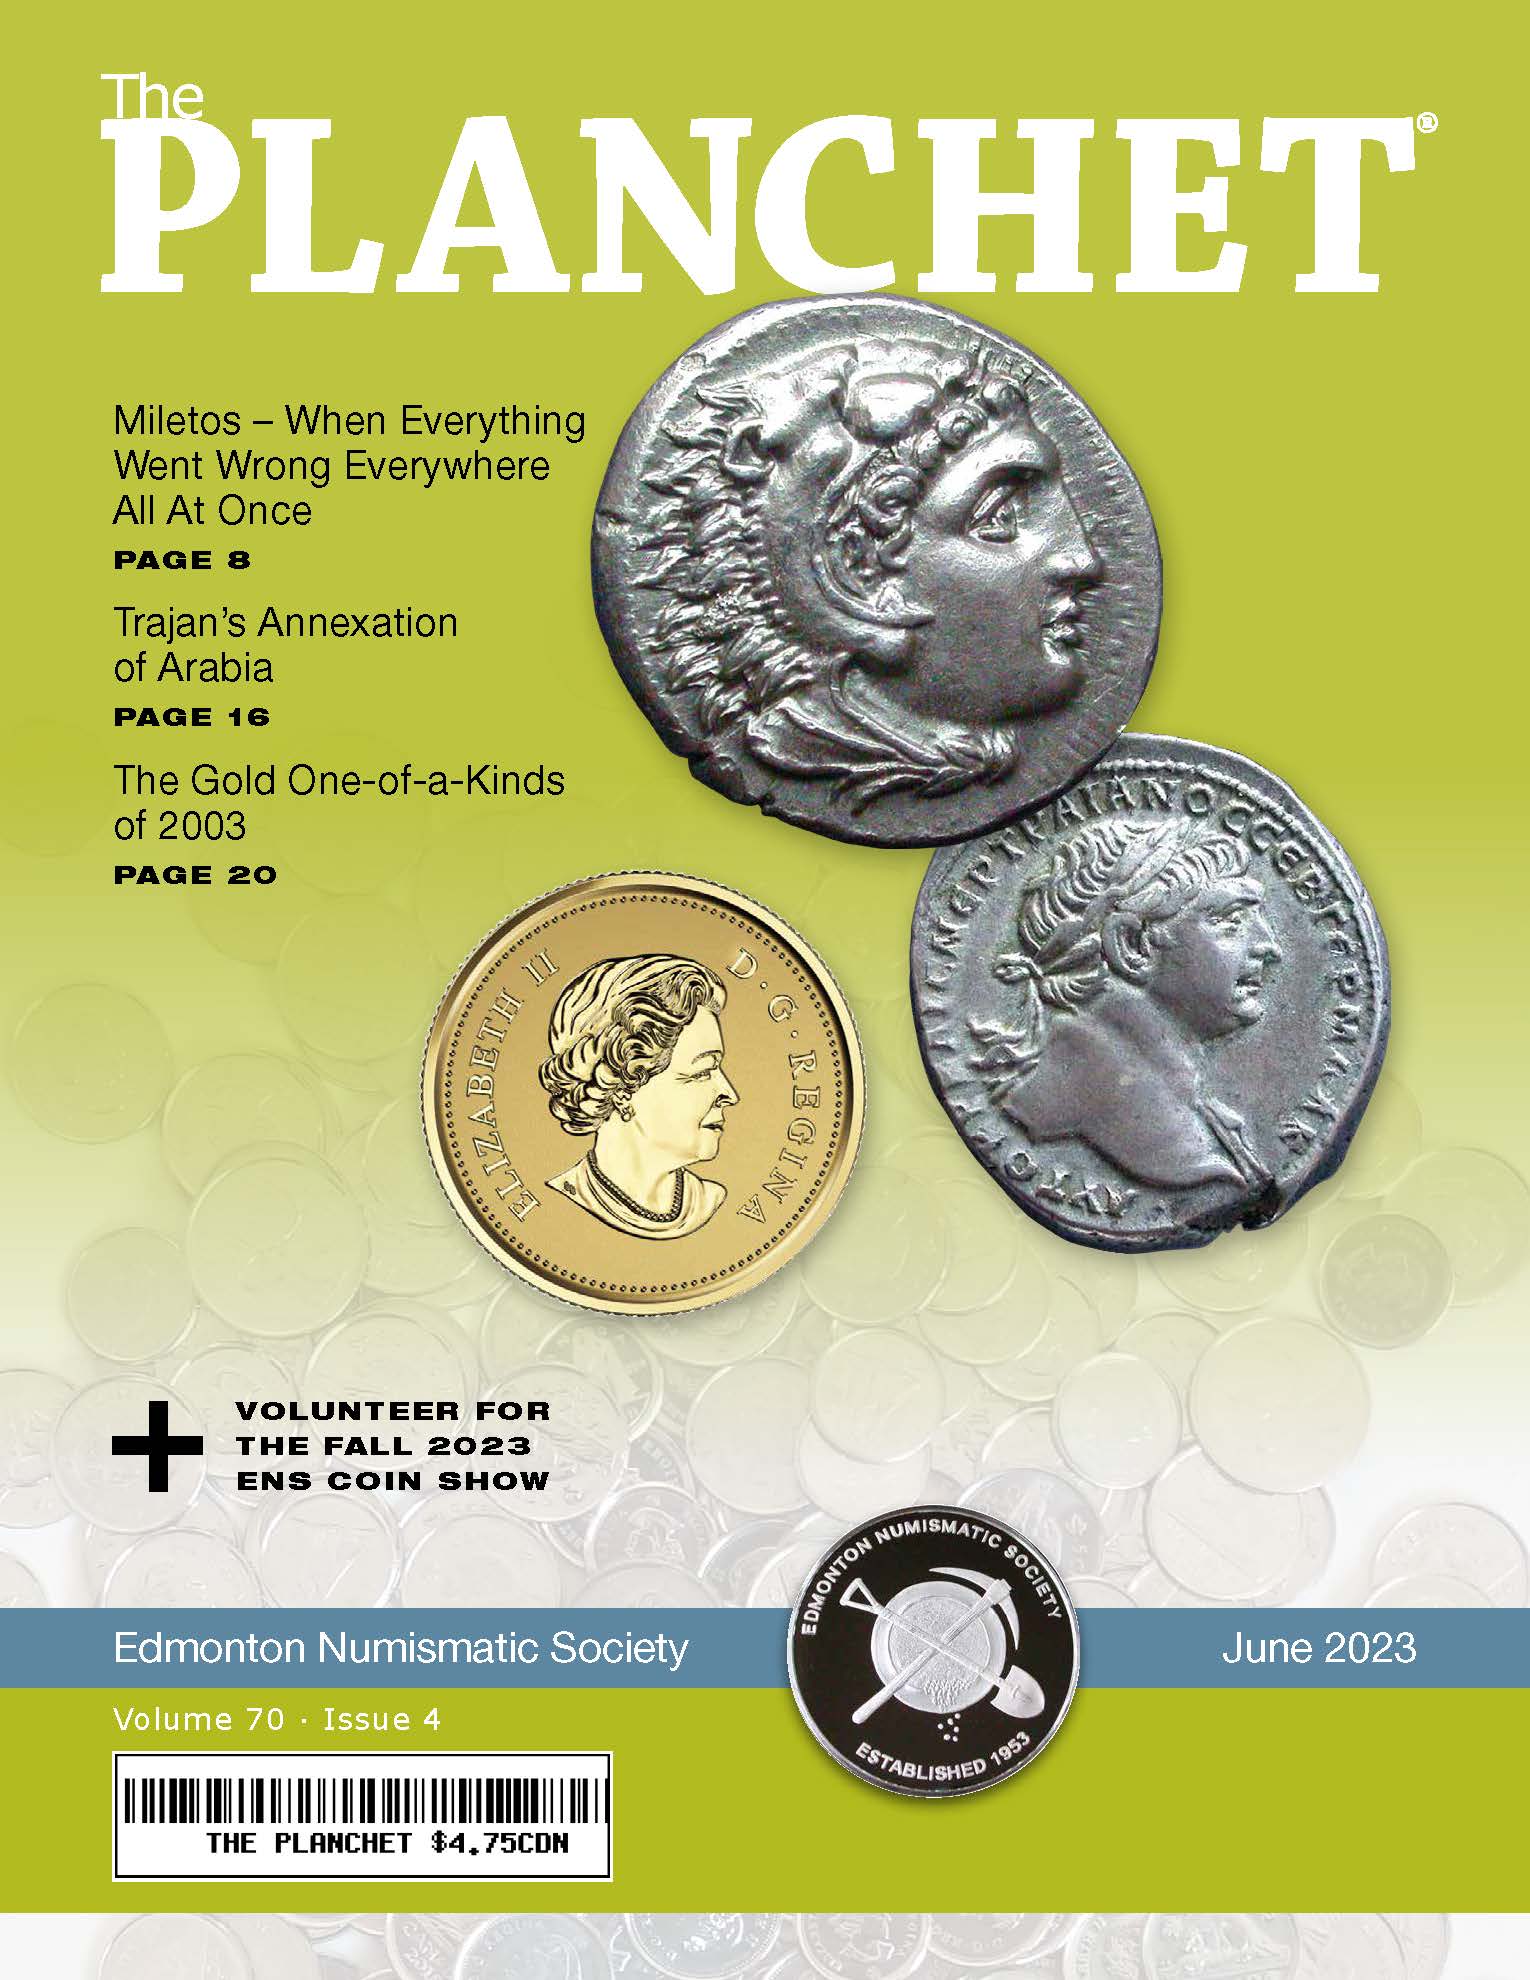 The Planchet Numismatic Magazine: June 2023